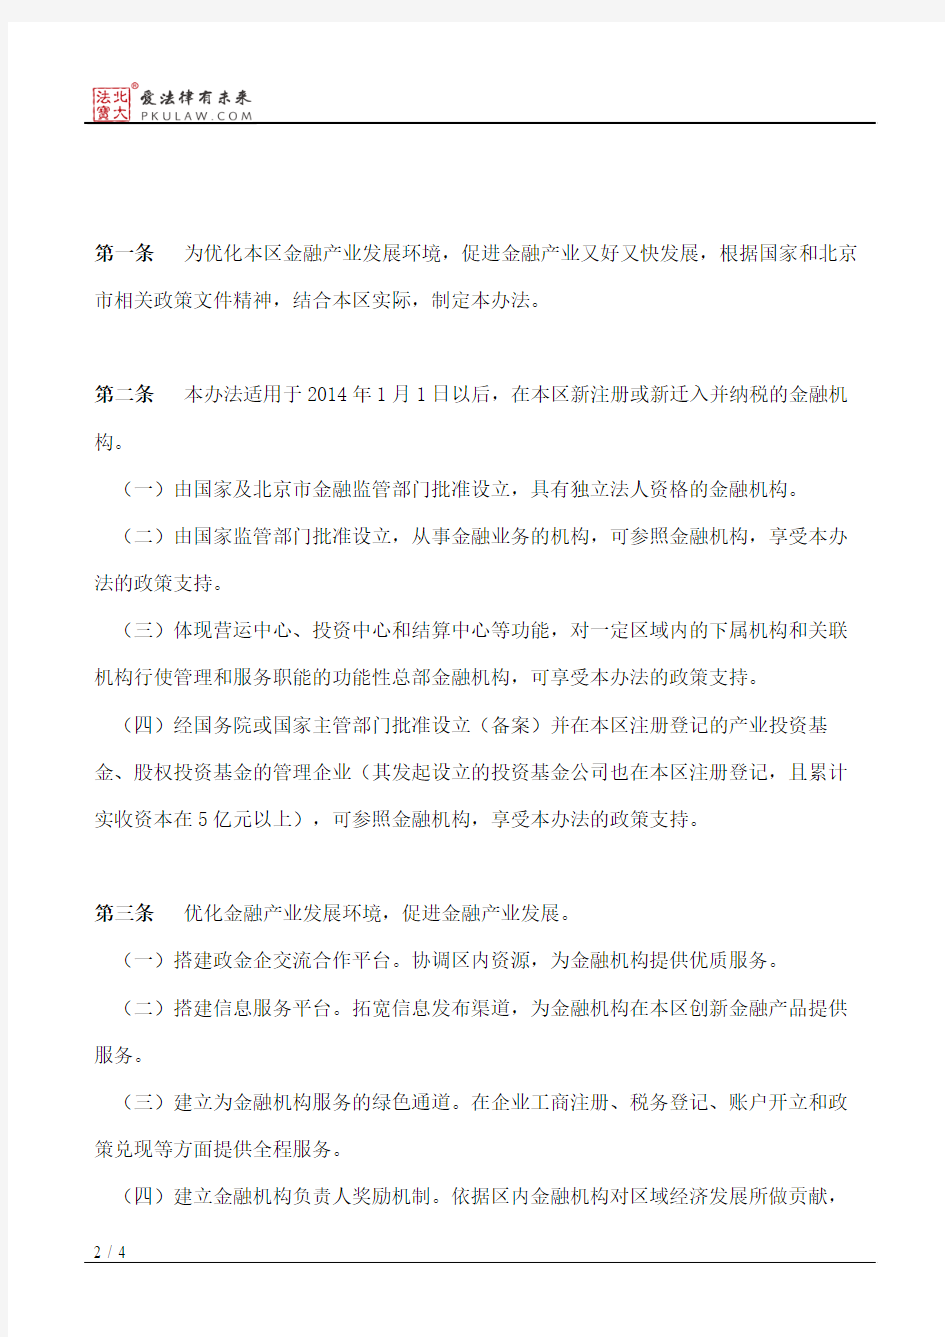 北京市顺义区人民政府关于印发顺义区促进金融产业发展办法的通知(2014)